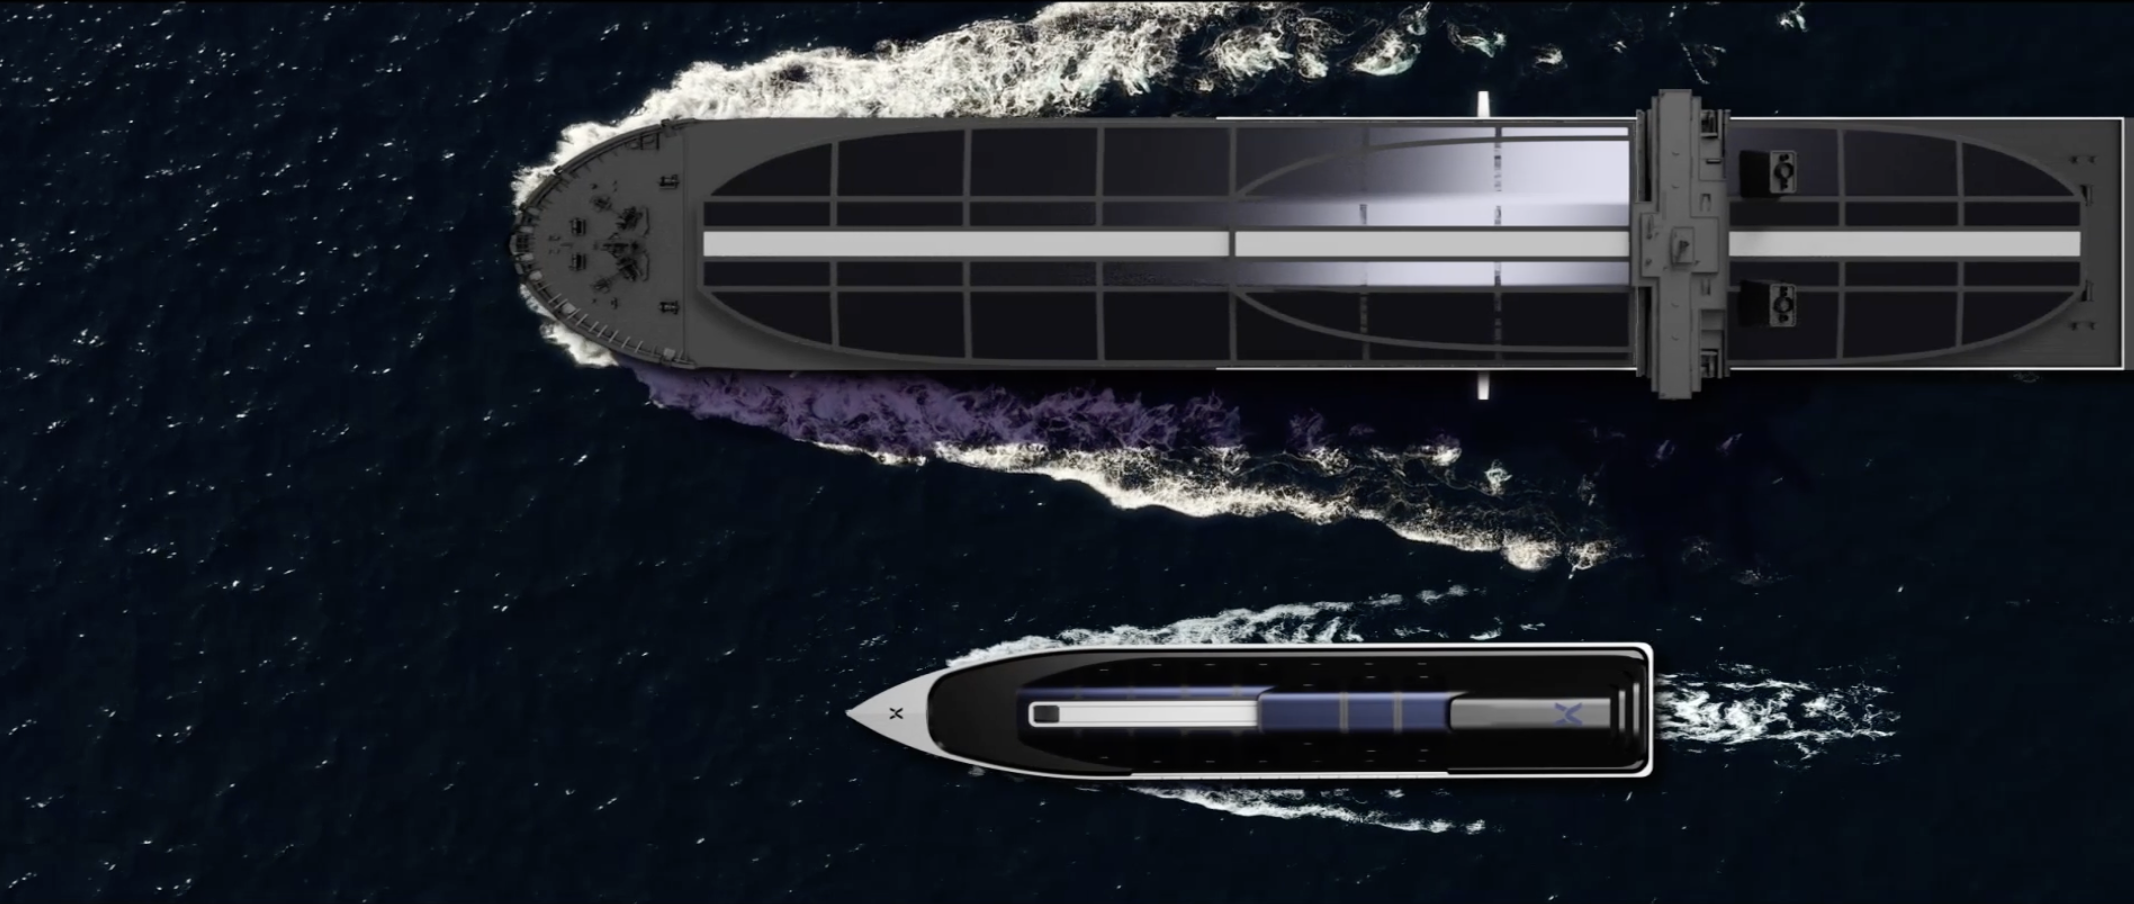 Batterietanker: Dieses 140-Meter-Schiff ist ein schwimmender Akku